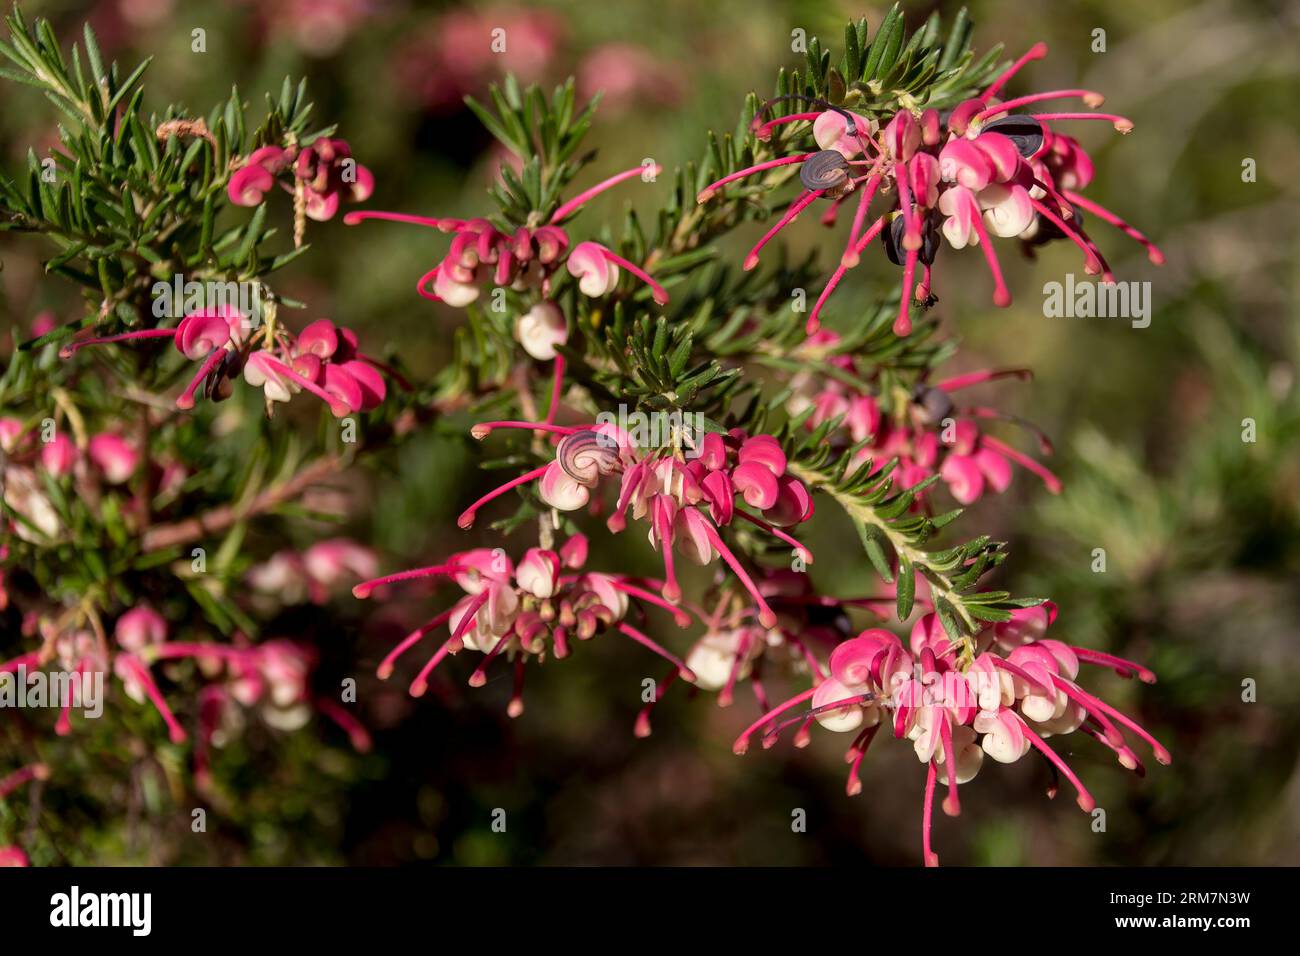 Australischer einheimischer Sträucher Grevillea Poorinda Rondeau, volle Blüte, Cluster von zarten rosafarbenen und weißen Blüten. Sonniger Garten, Winter, Queensland. Stockfoto